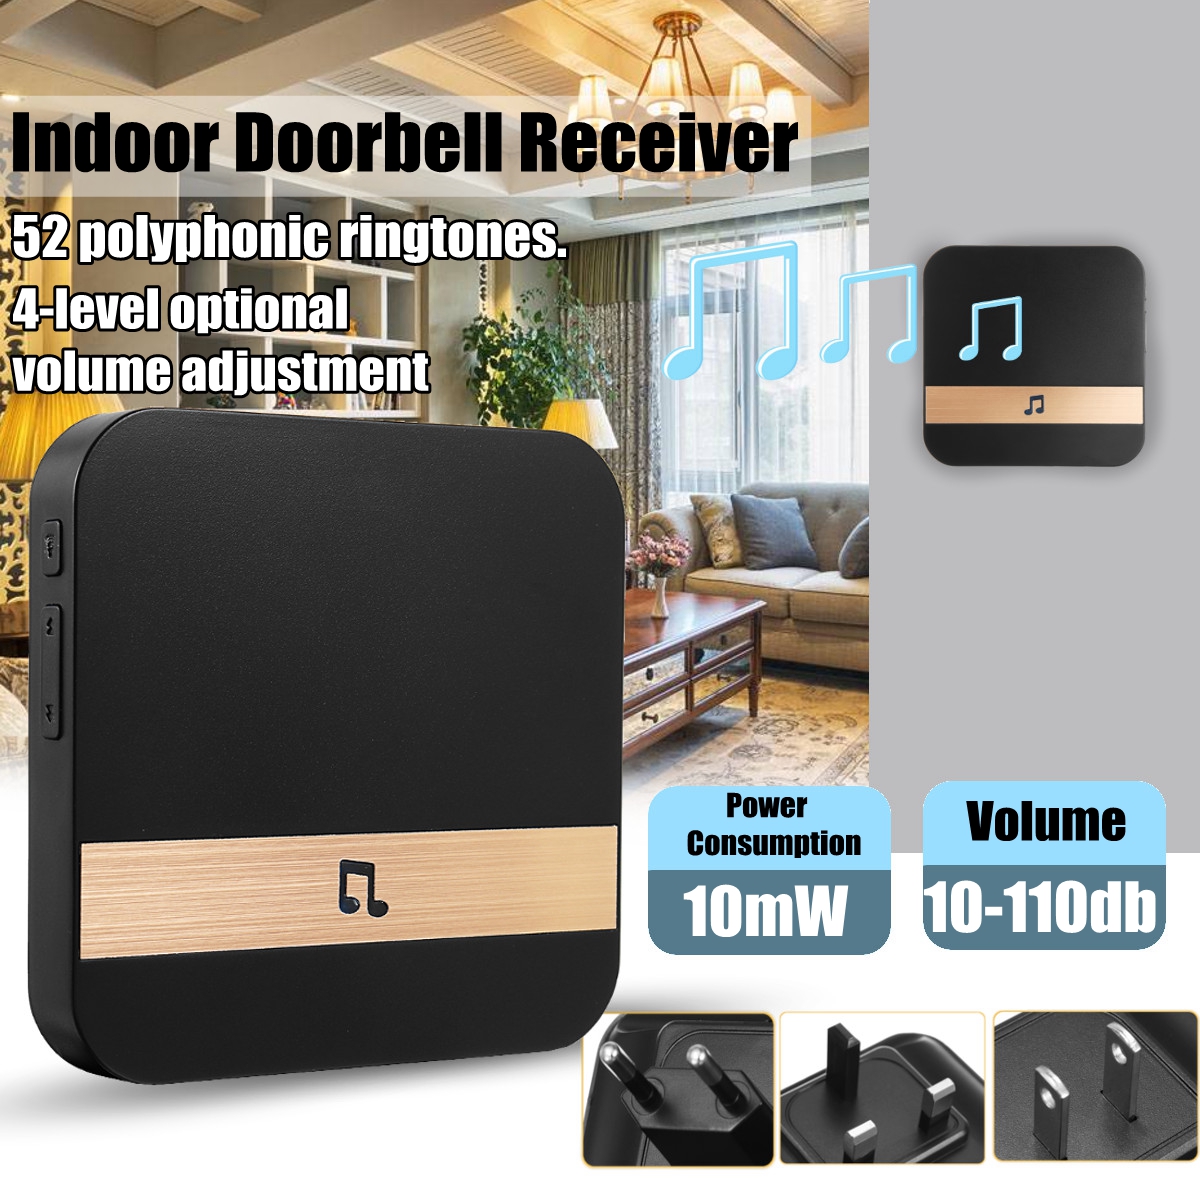 Wireless-WiFi-Doorbell-Remote-Control-Digital-4-Volume-Home-Indoor-Doorbell-Receiver-1340620-2